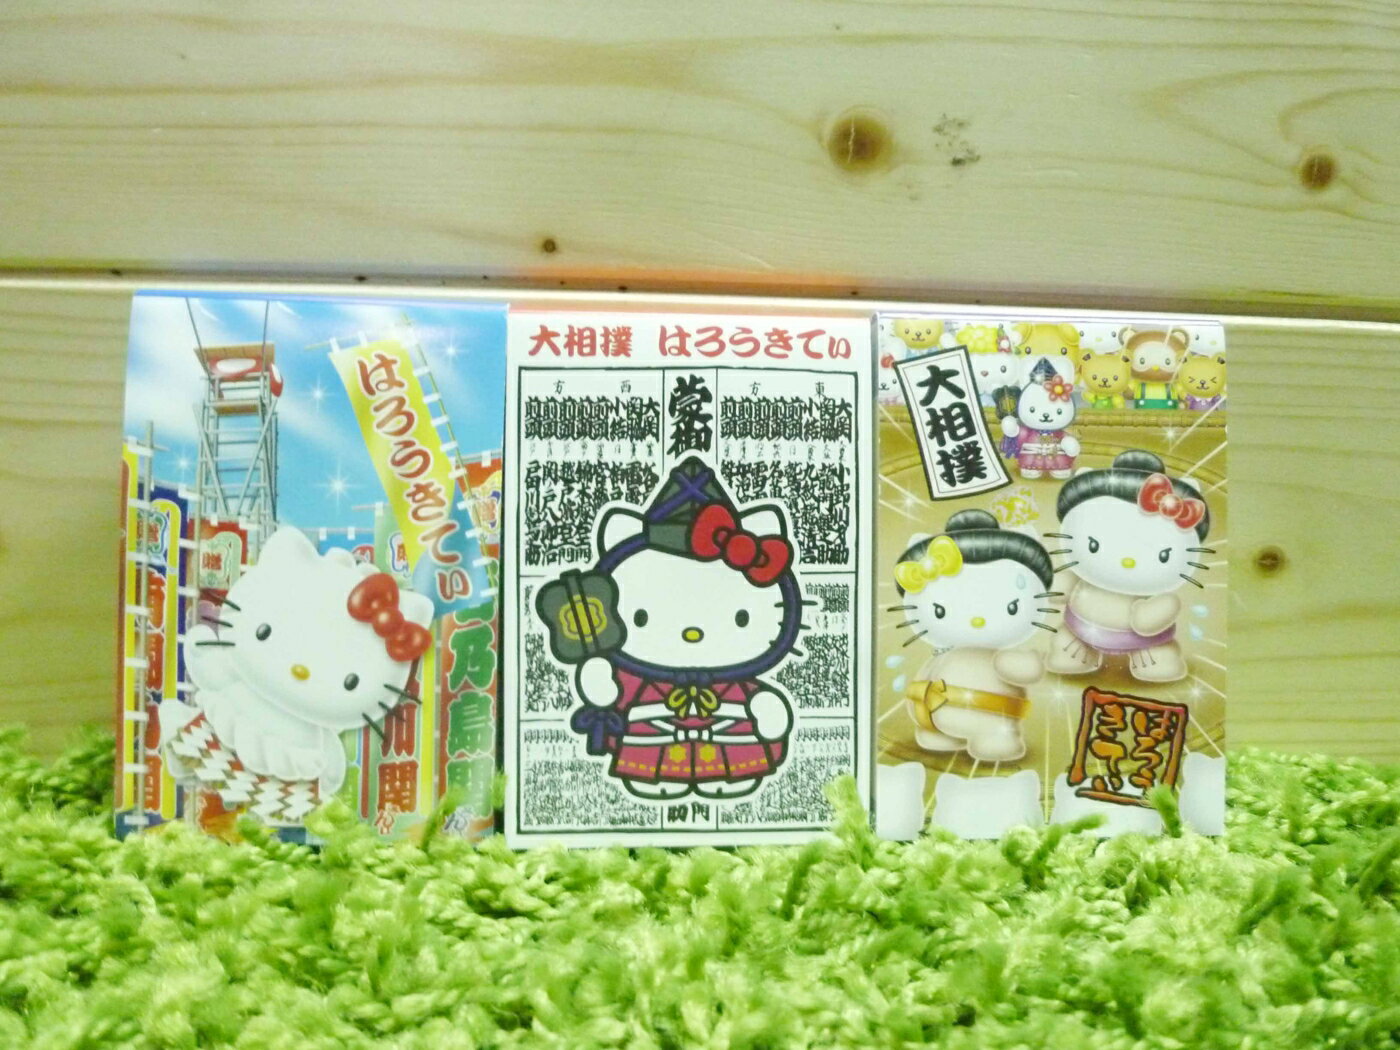 【震撼精品百貨】Hello Kitty 凱蒂貓 造型便條紙-相撲圖案(三入)【共1款】 震撼日式精品百貨